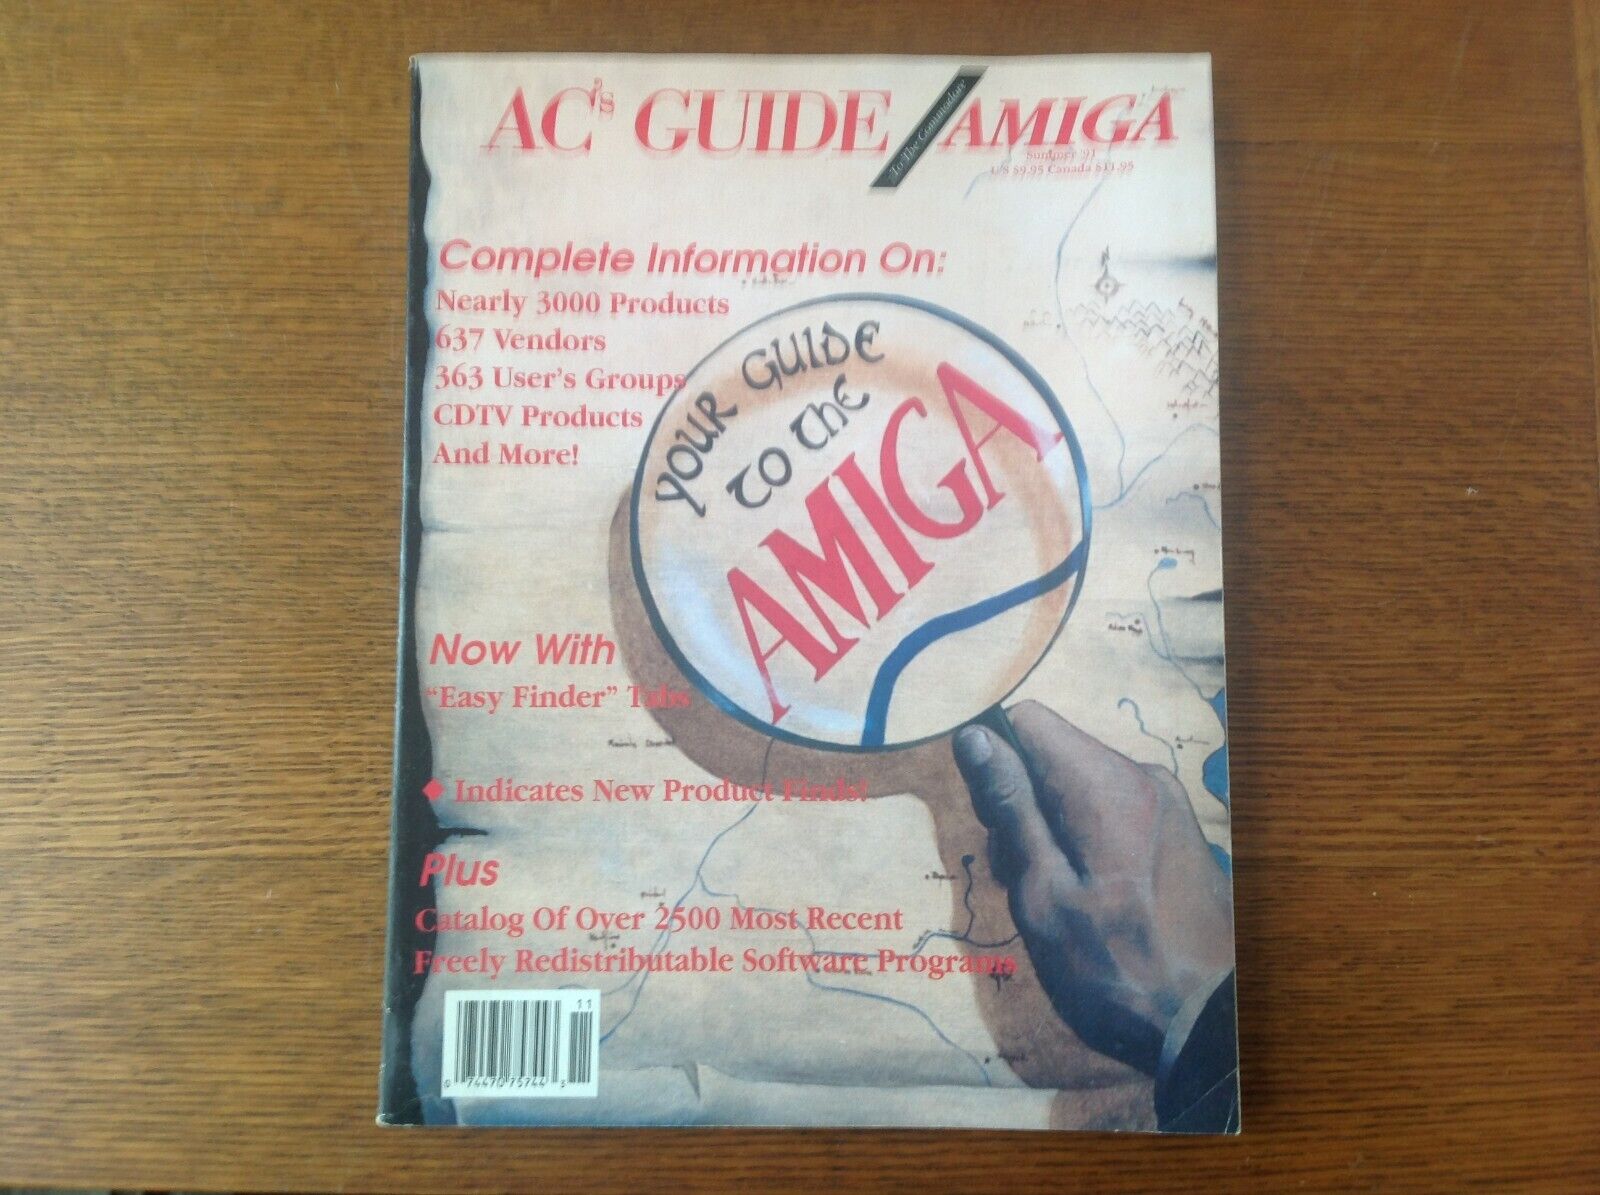 AC's Guide to the Commodore Amiga 1991